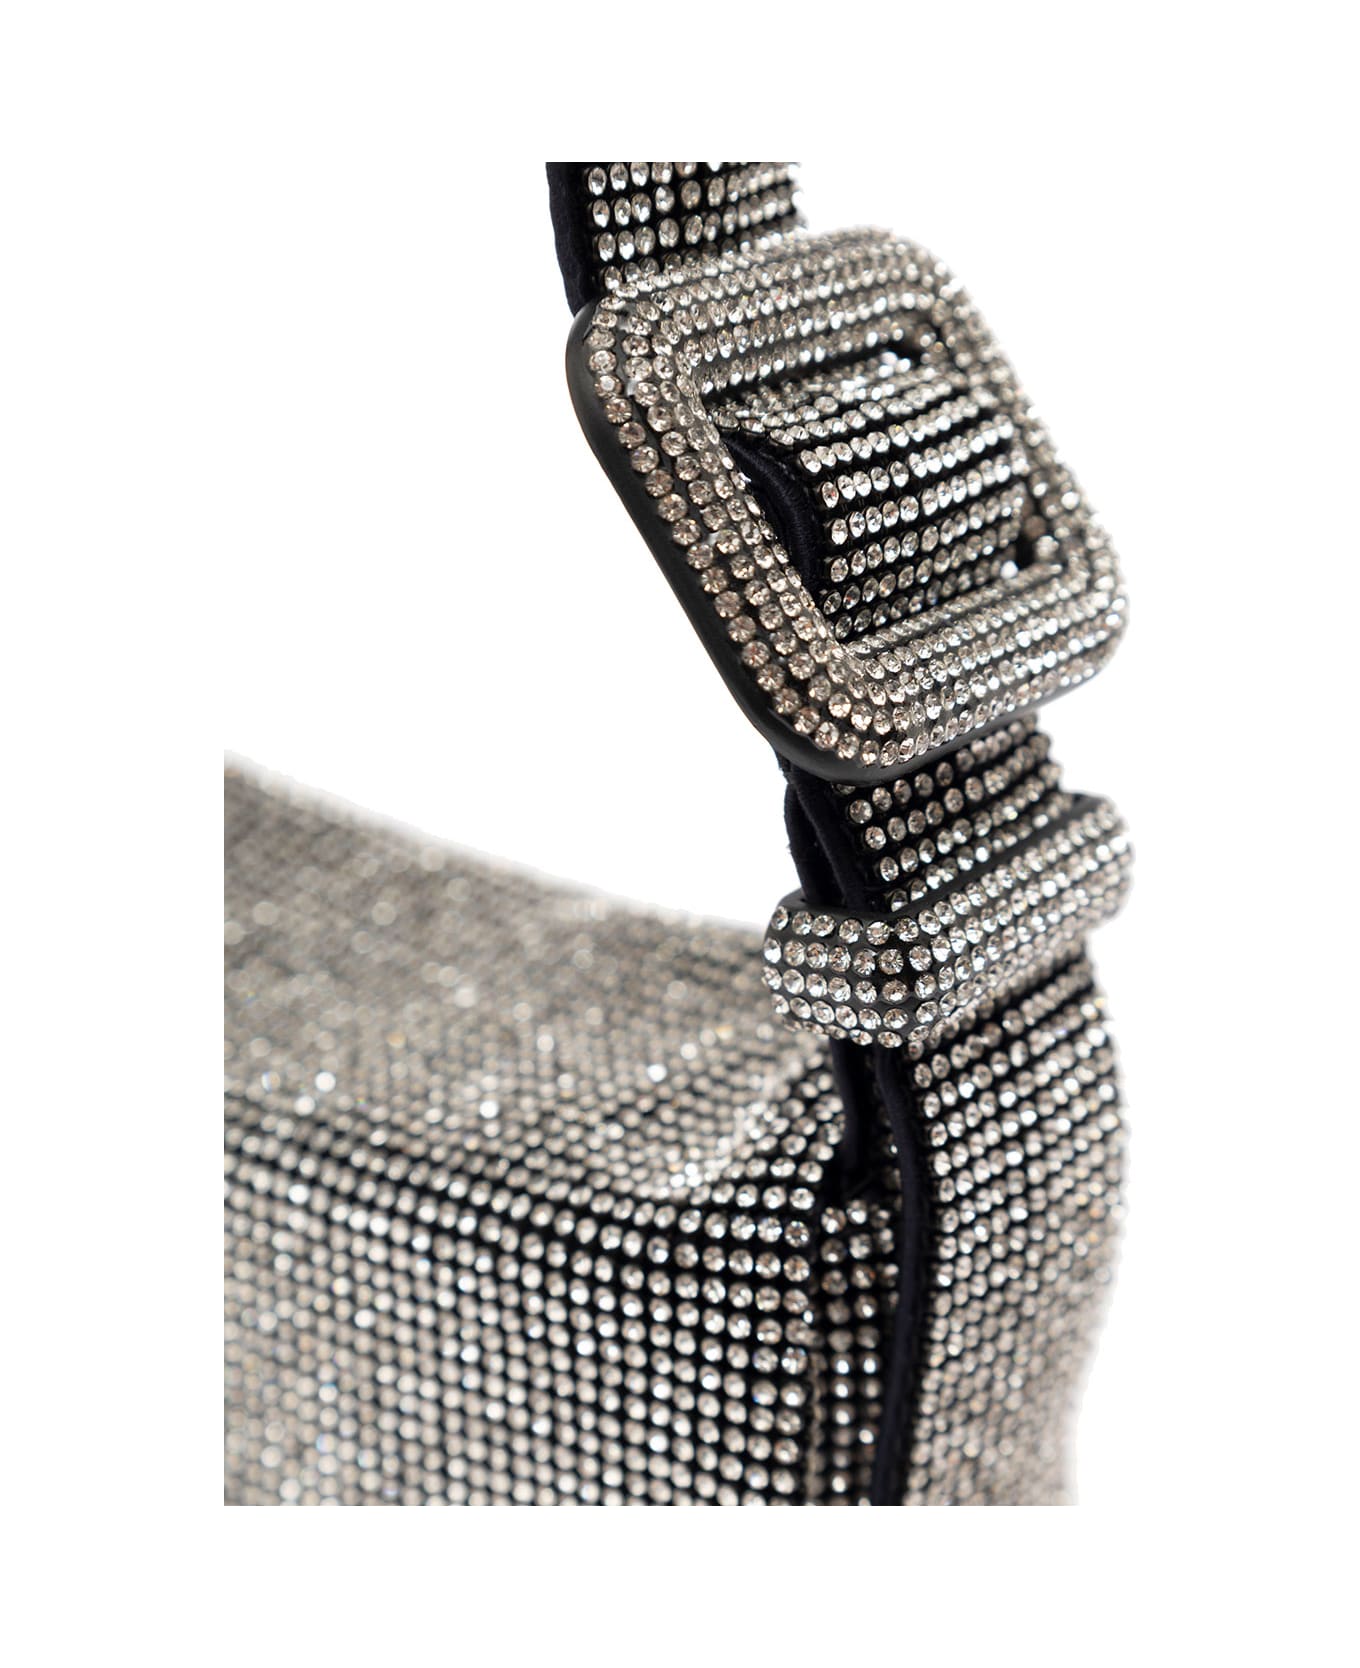 Benedetta Bruzziches 'vitty La Mignon' Silver Shoulder Bag With Gem Embellishment In Rhinestone Mesh Woman - Metallic